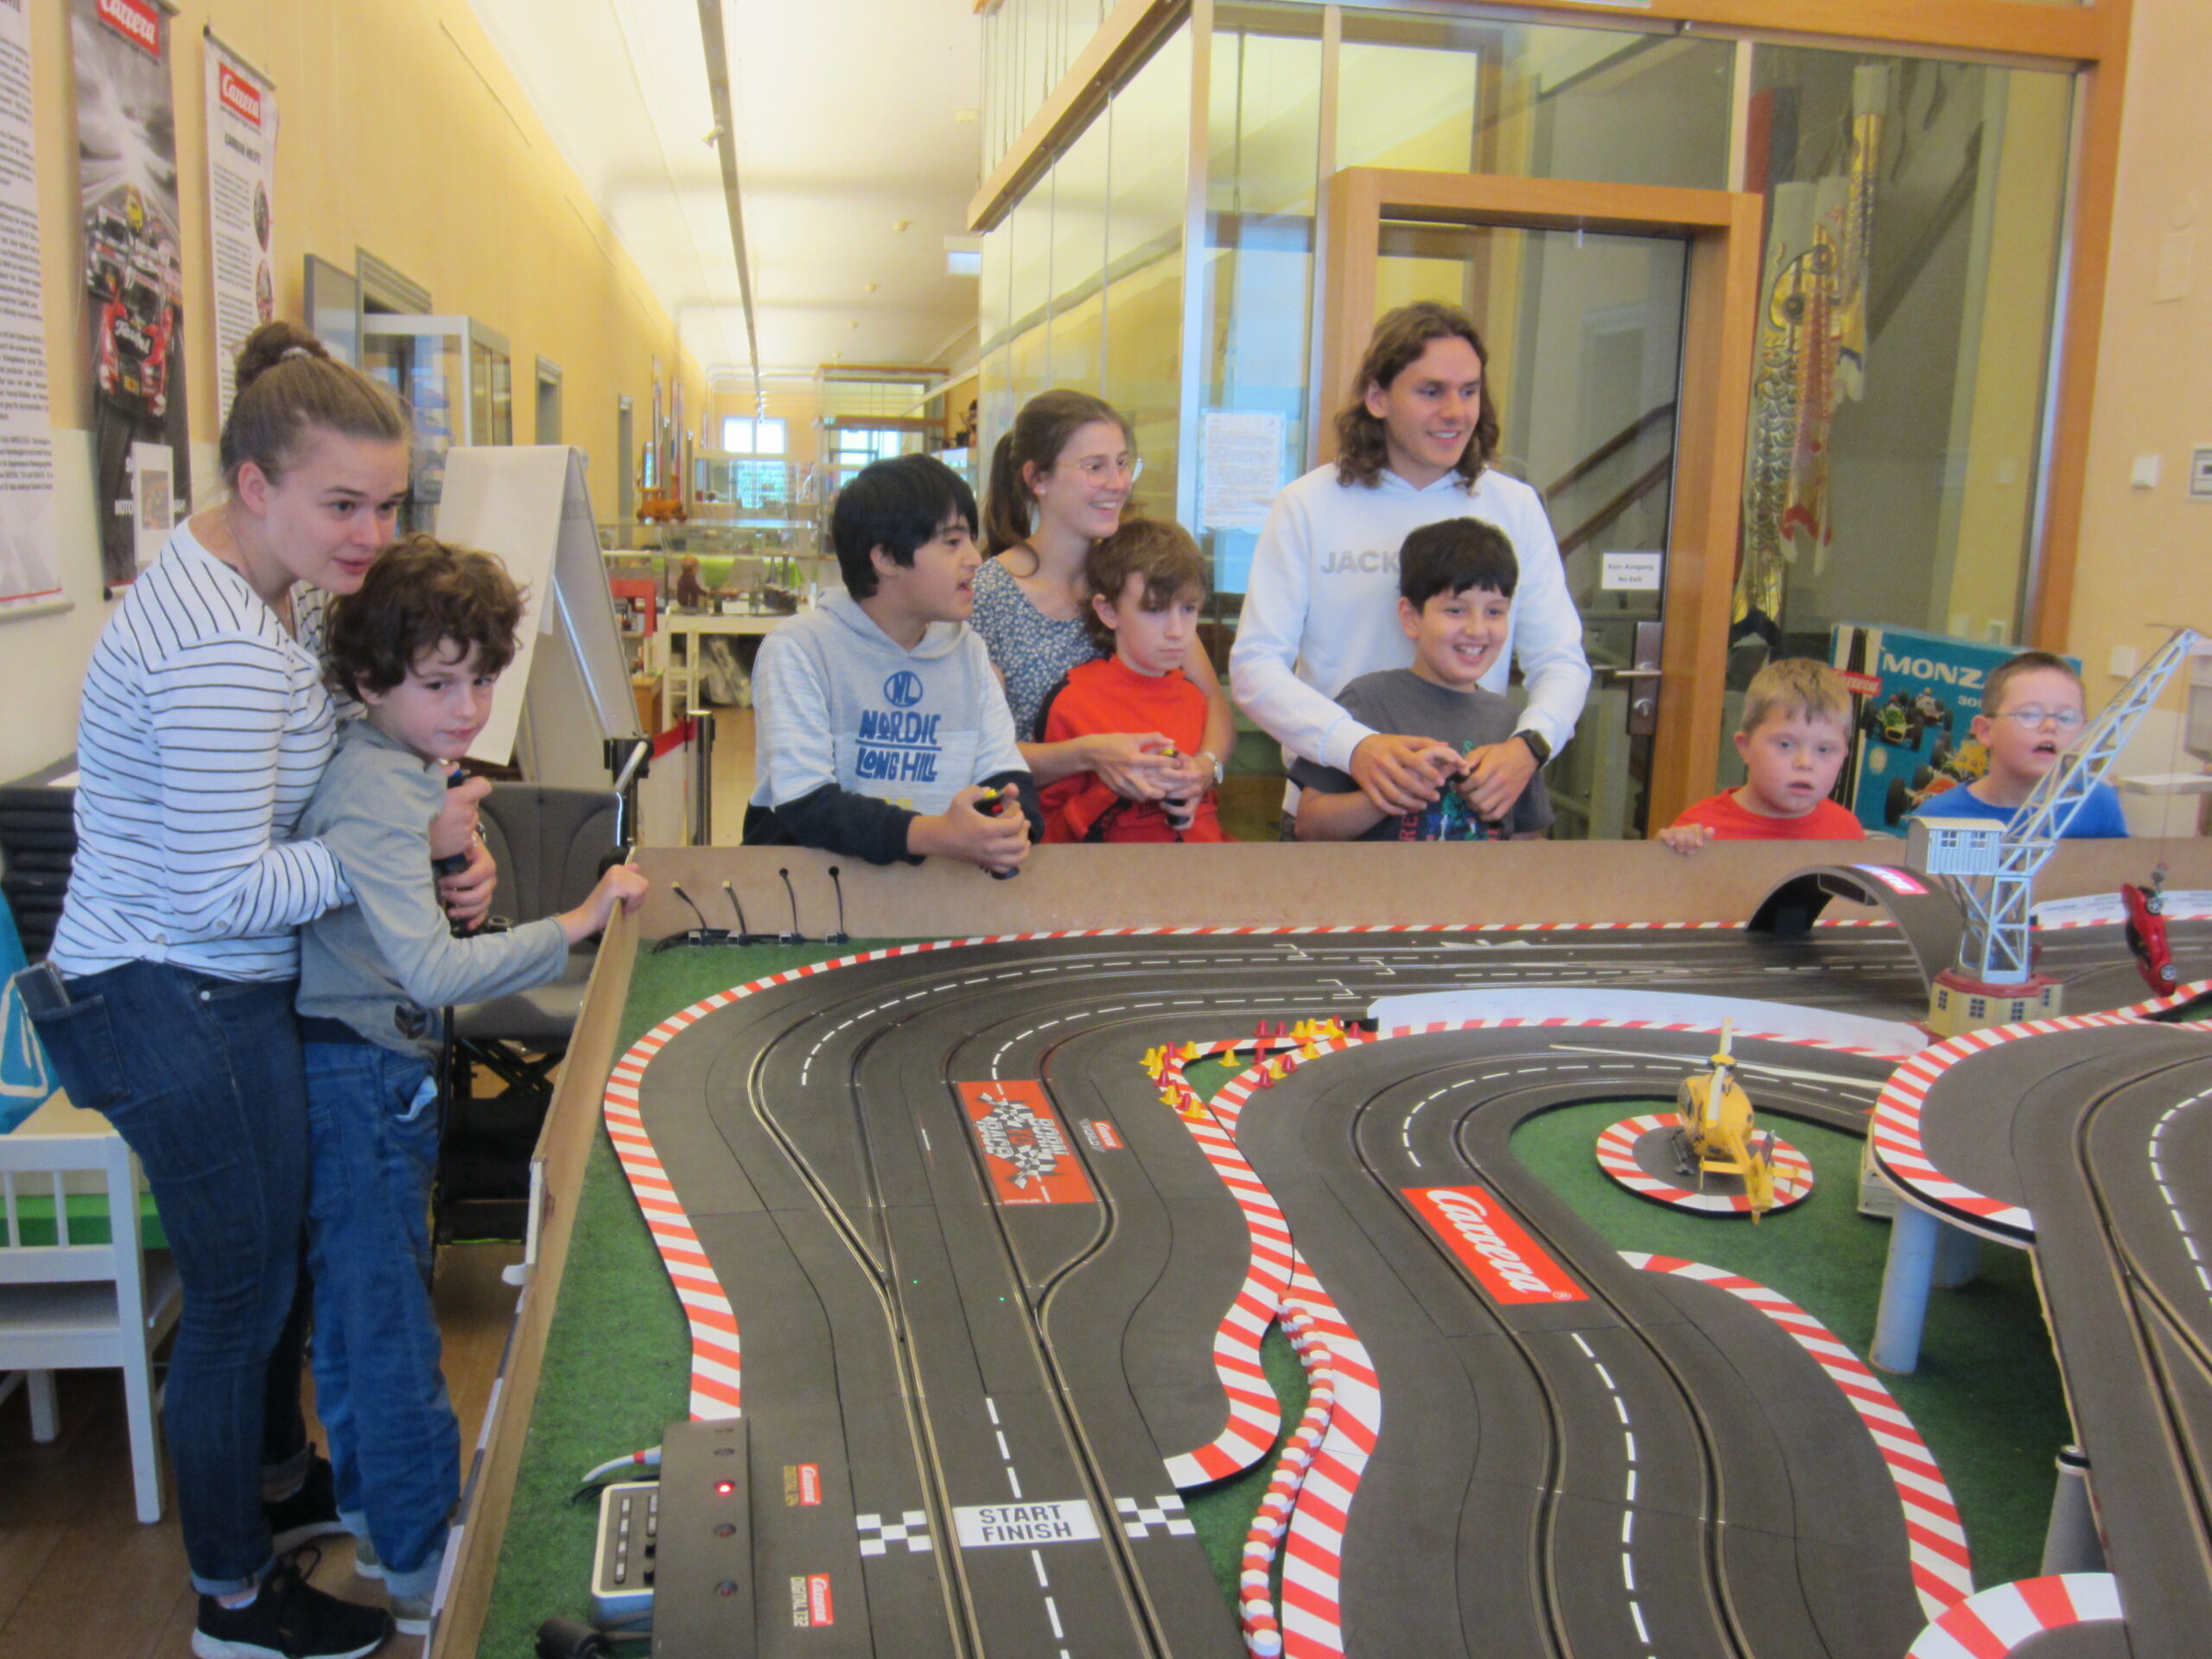 Die Carrerabahn im Spielzeugmuseum zog die Rennfahrer unter den Kindern an. Foto: Lebenshilfe